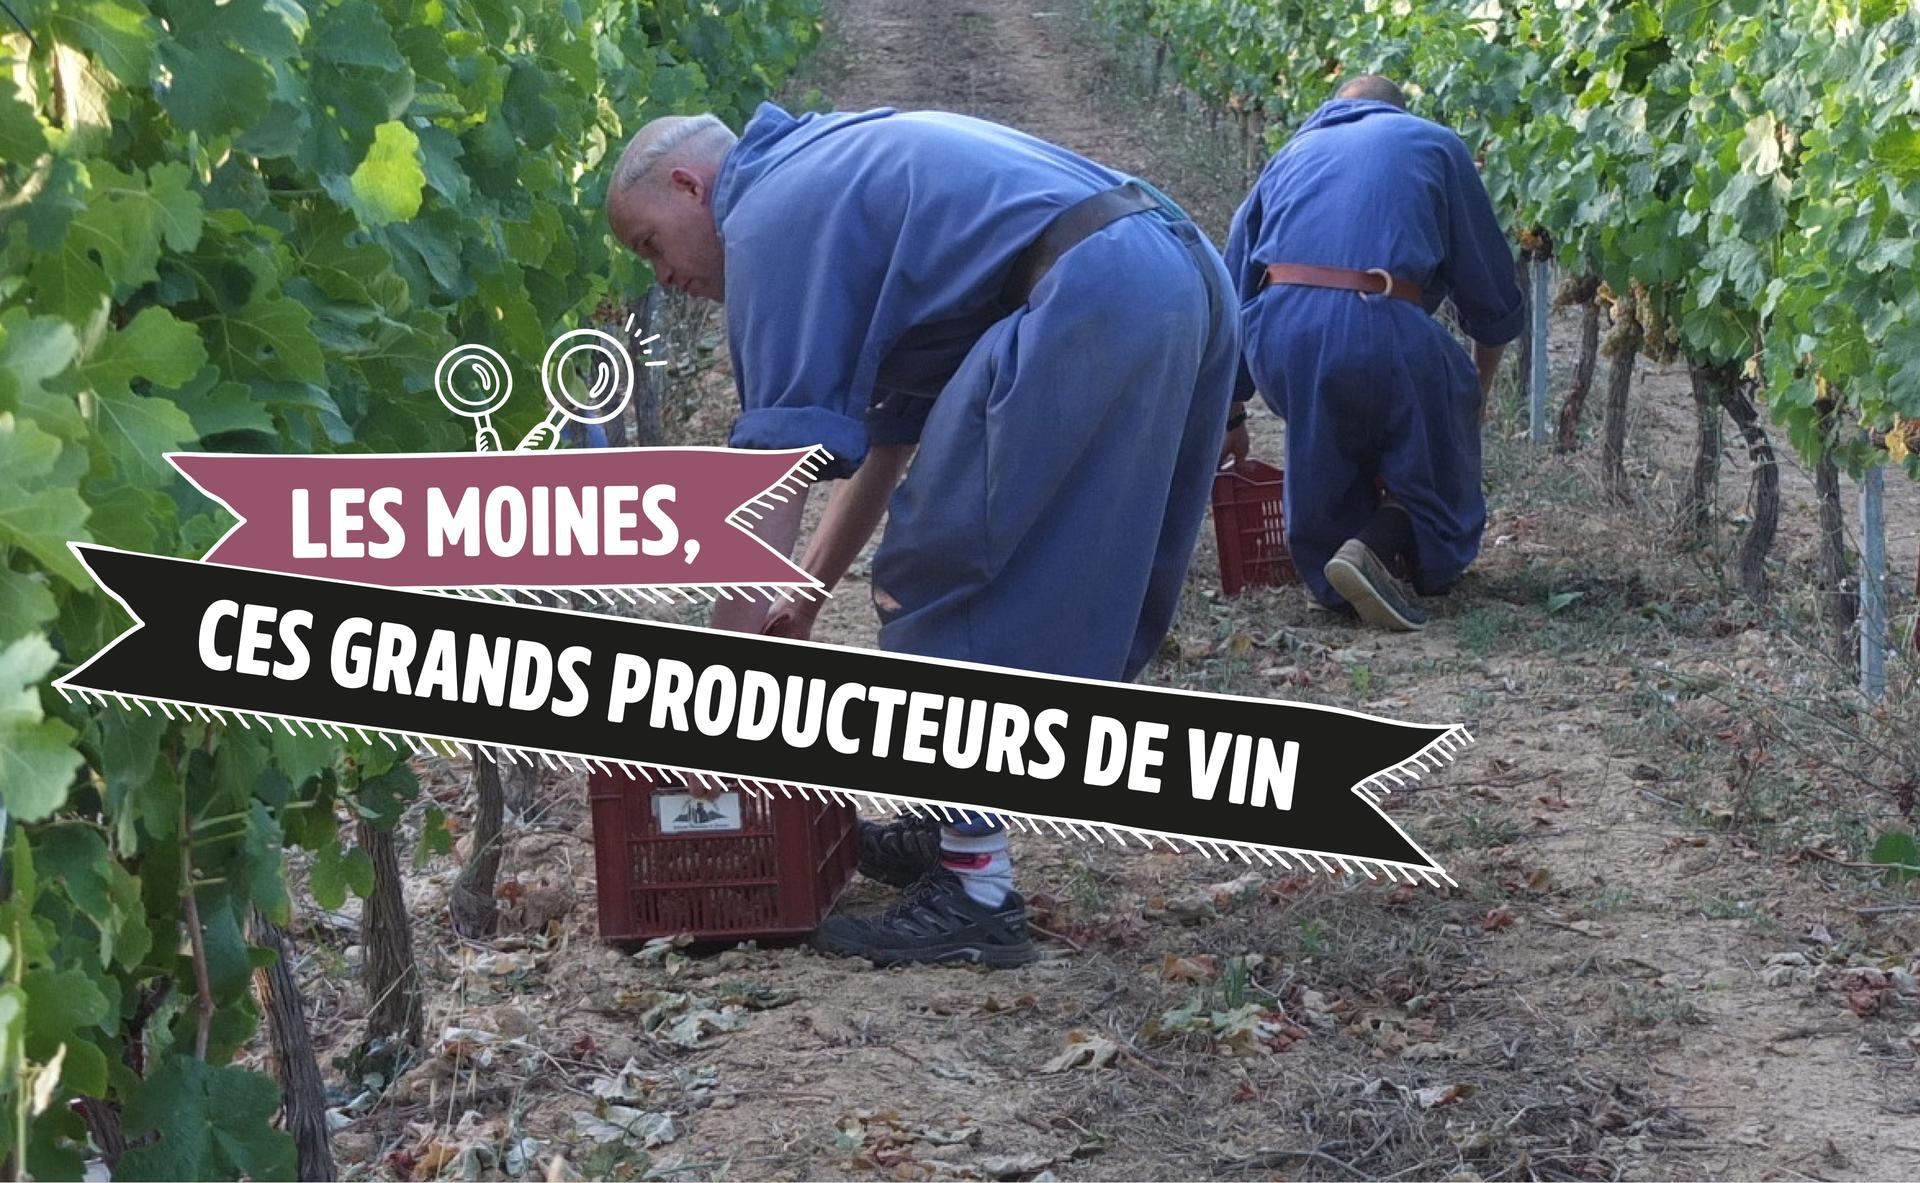 Les moines, ces grands producteurs de vin